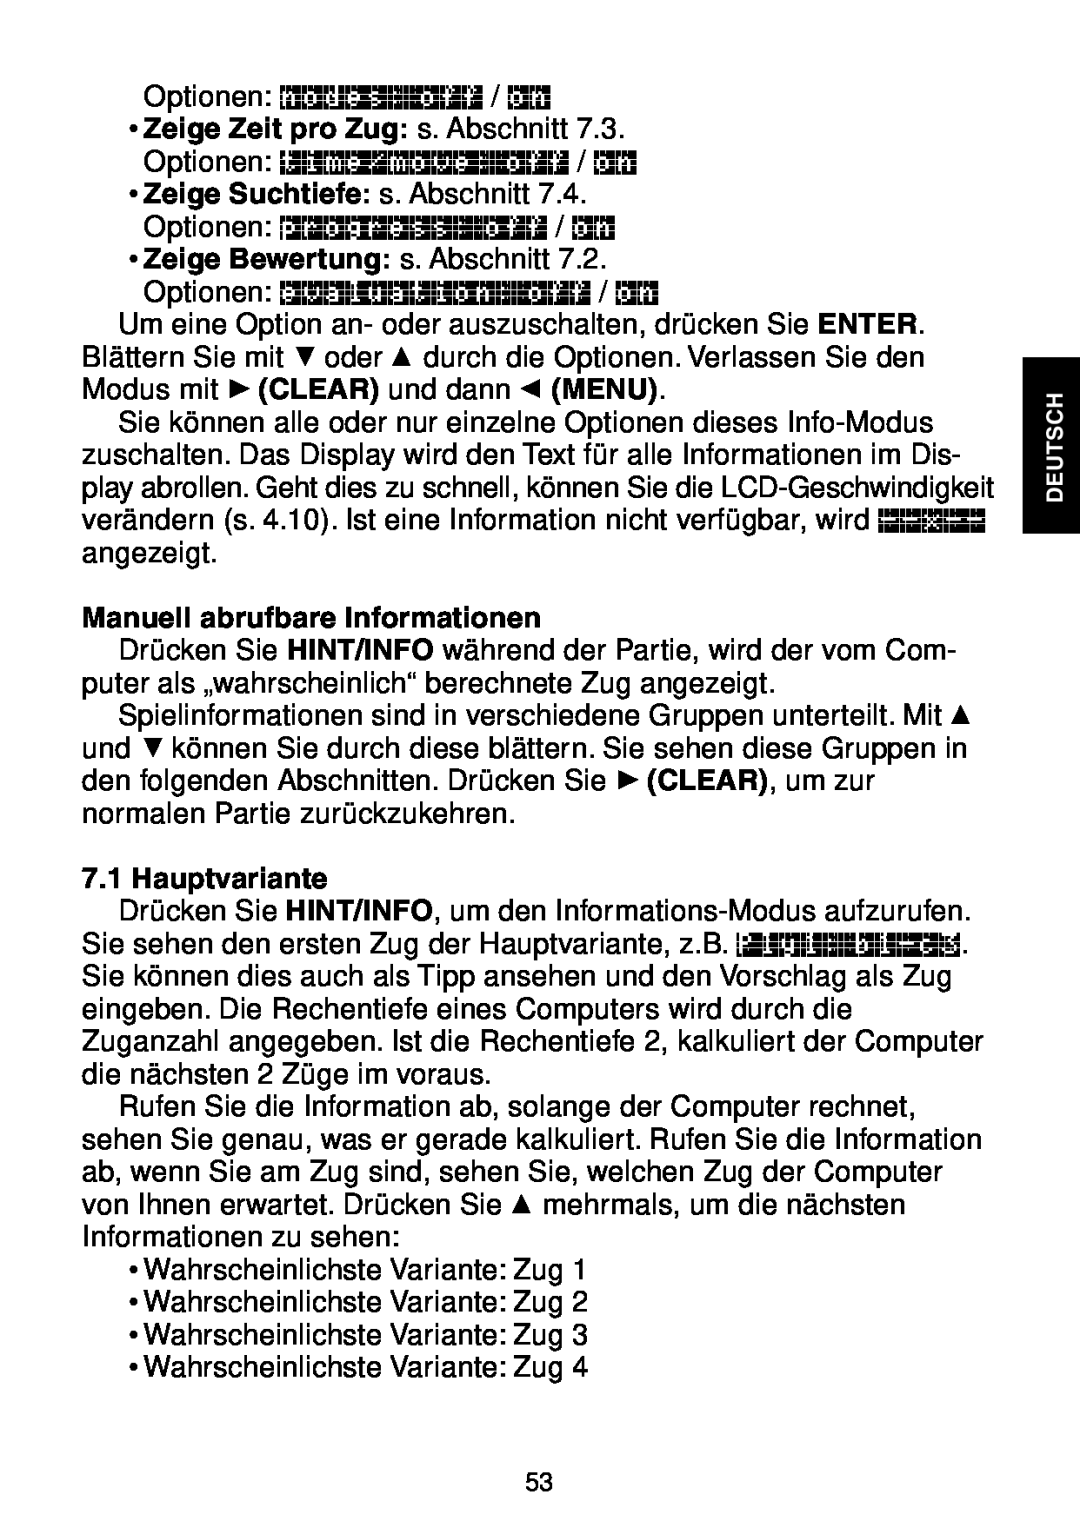 Saitek Maestro Travel Chess Computer manual Zeige Zeit pro Zug s. Abschnitt, Zeige Suchtiefe s. Abschnitt, Hauptvariante 